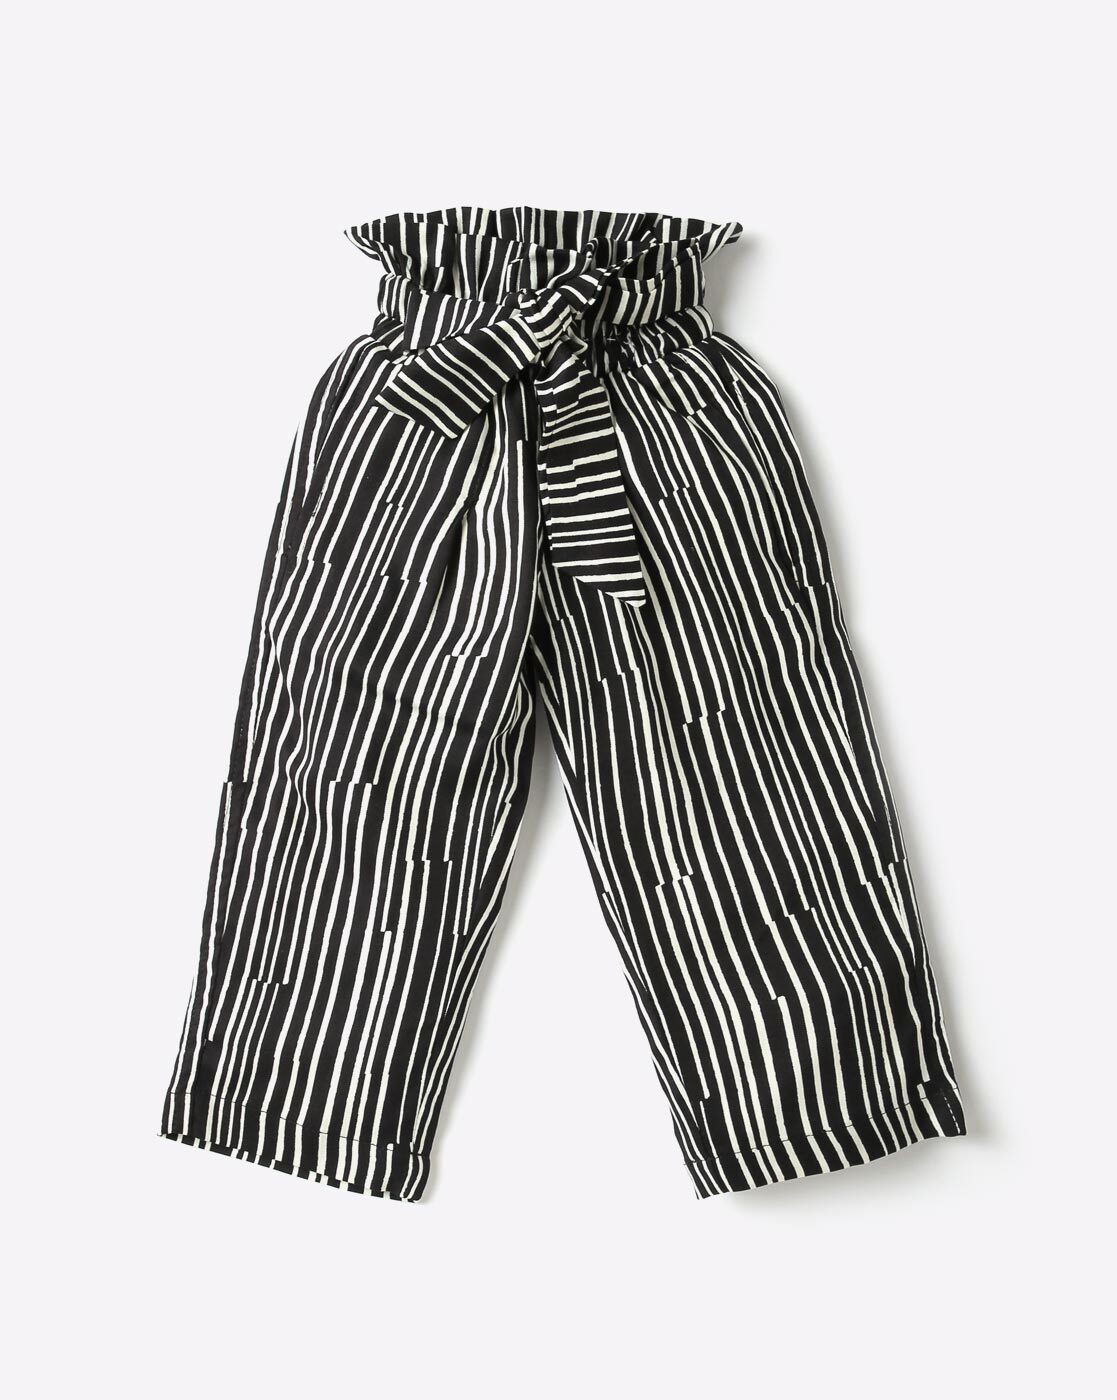 Hybrid & Company Womens Black White Striped Pants Size 1X - beyond exchange